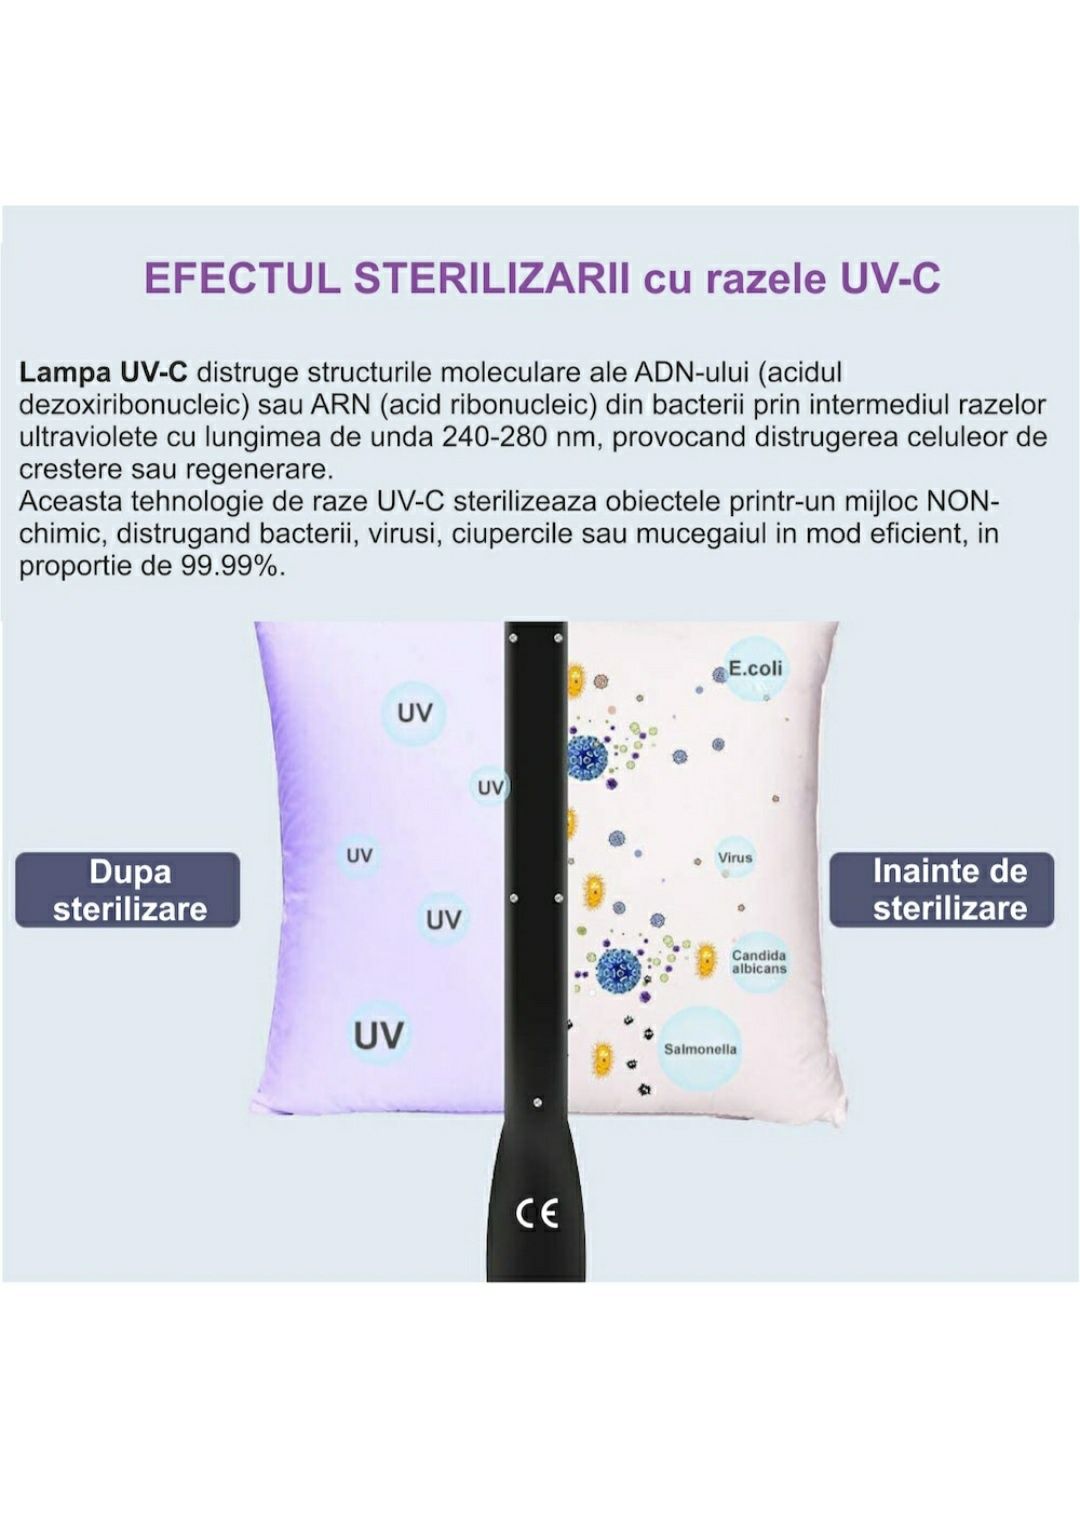 Lampa bactericida sterilizator portabil